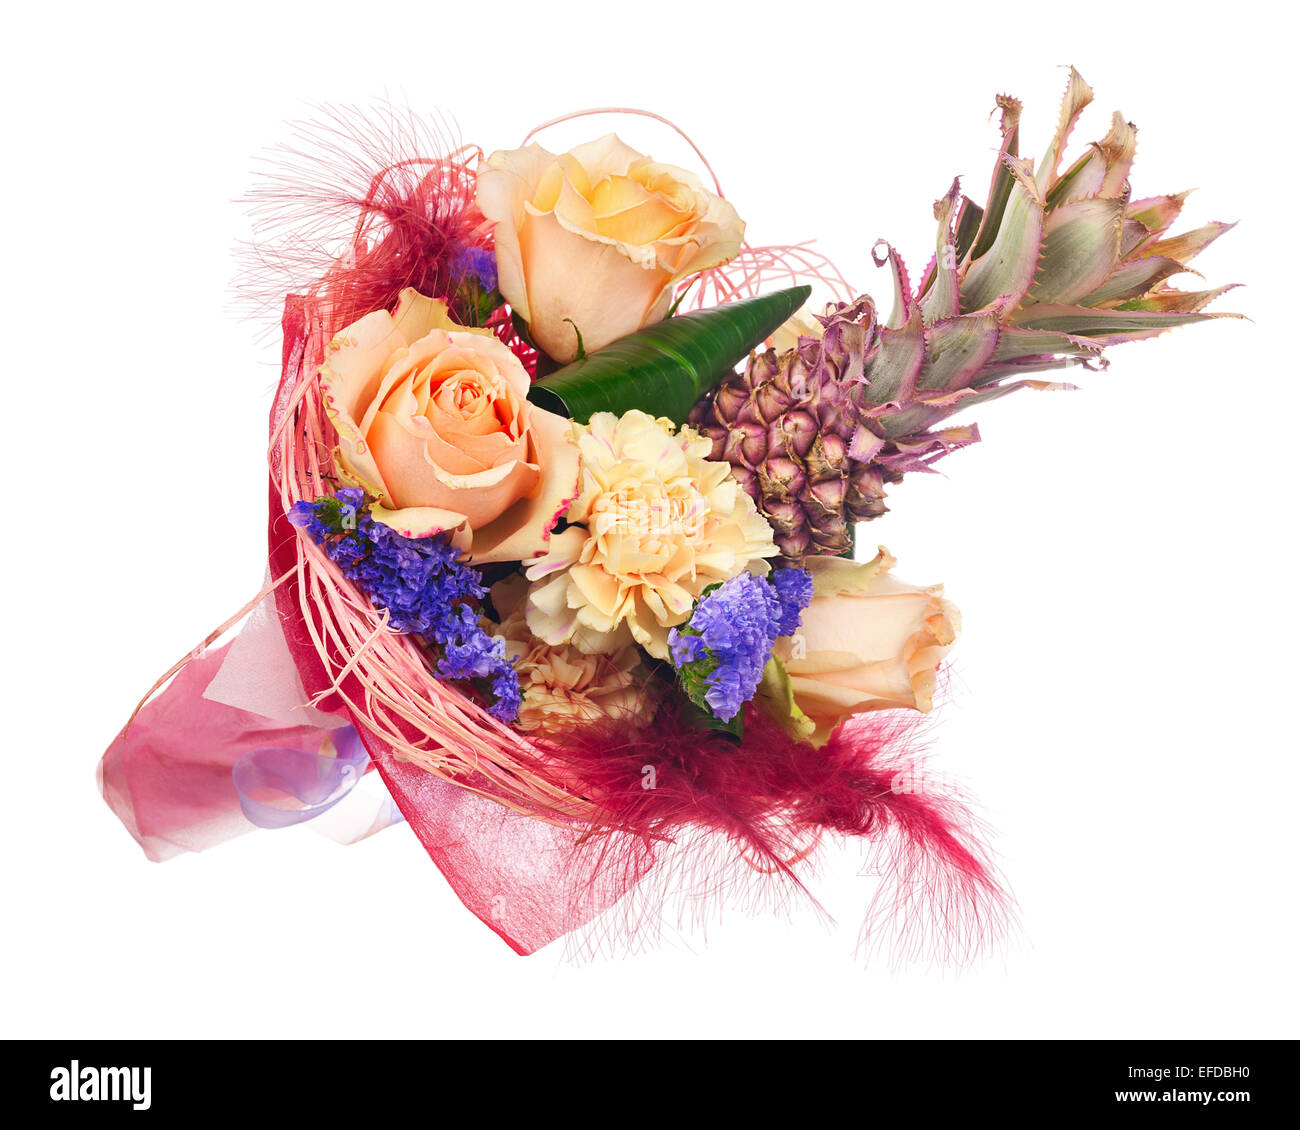 Schöner Blumenstrauß Rosen, Nelken, dekorativen Ananas und andere Blumen in  rot Paket isoliert auf weißem Hintergrund Stockfotografie - Alamy